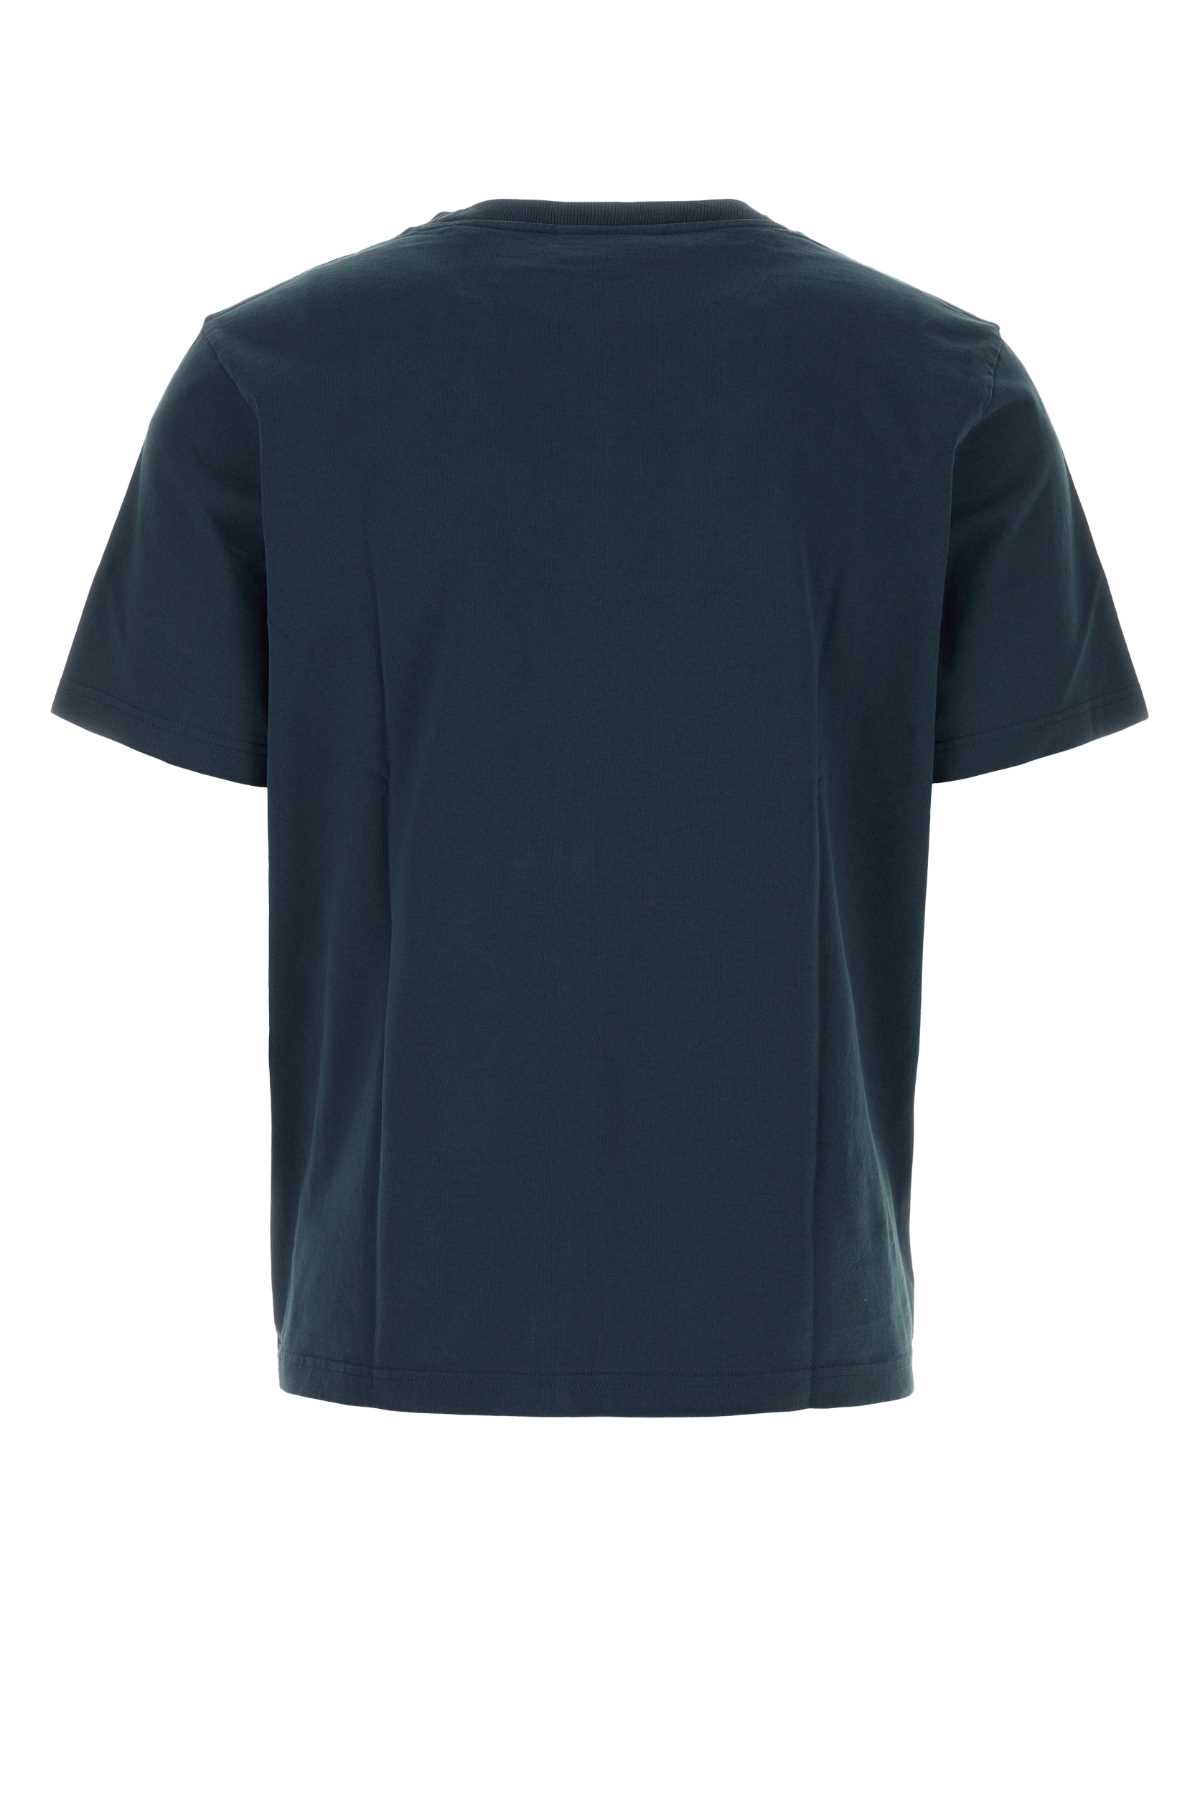 Shop Maison Kitsuné Navy Blue Cotton T-shirt In Deepnavy